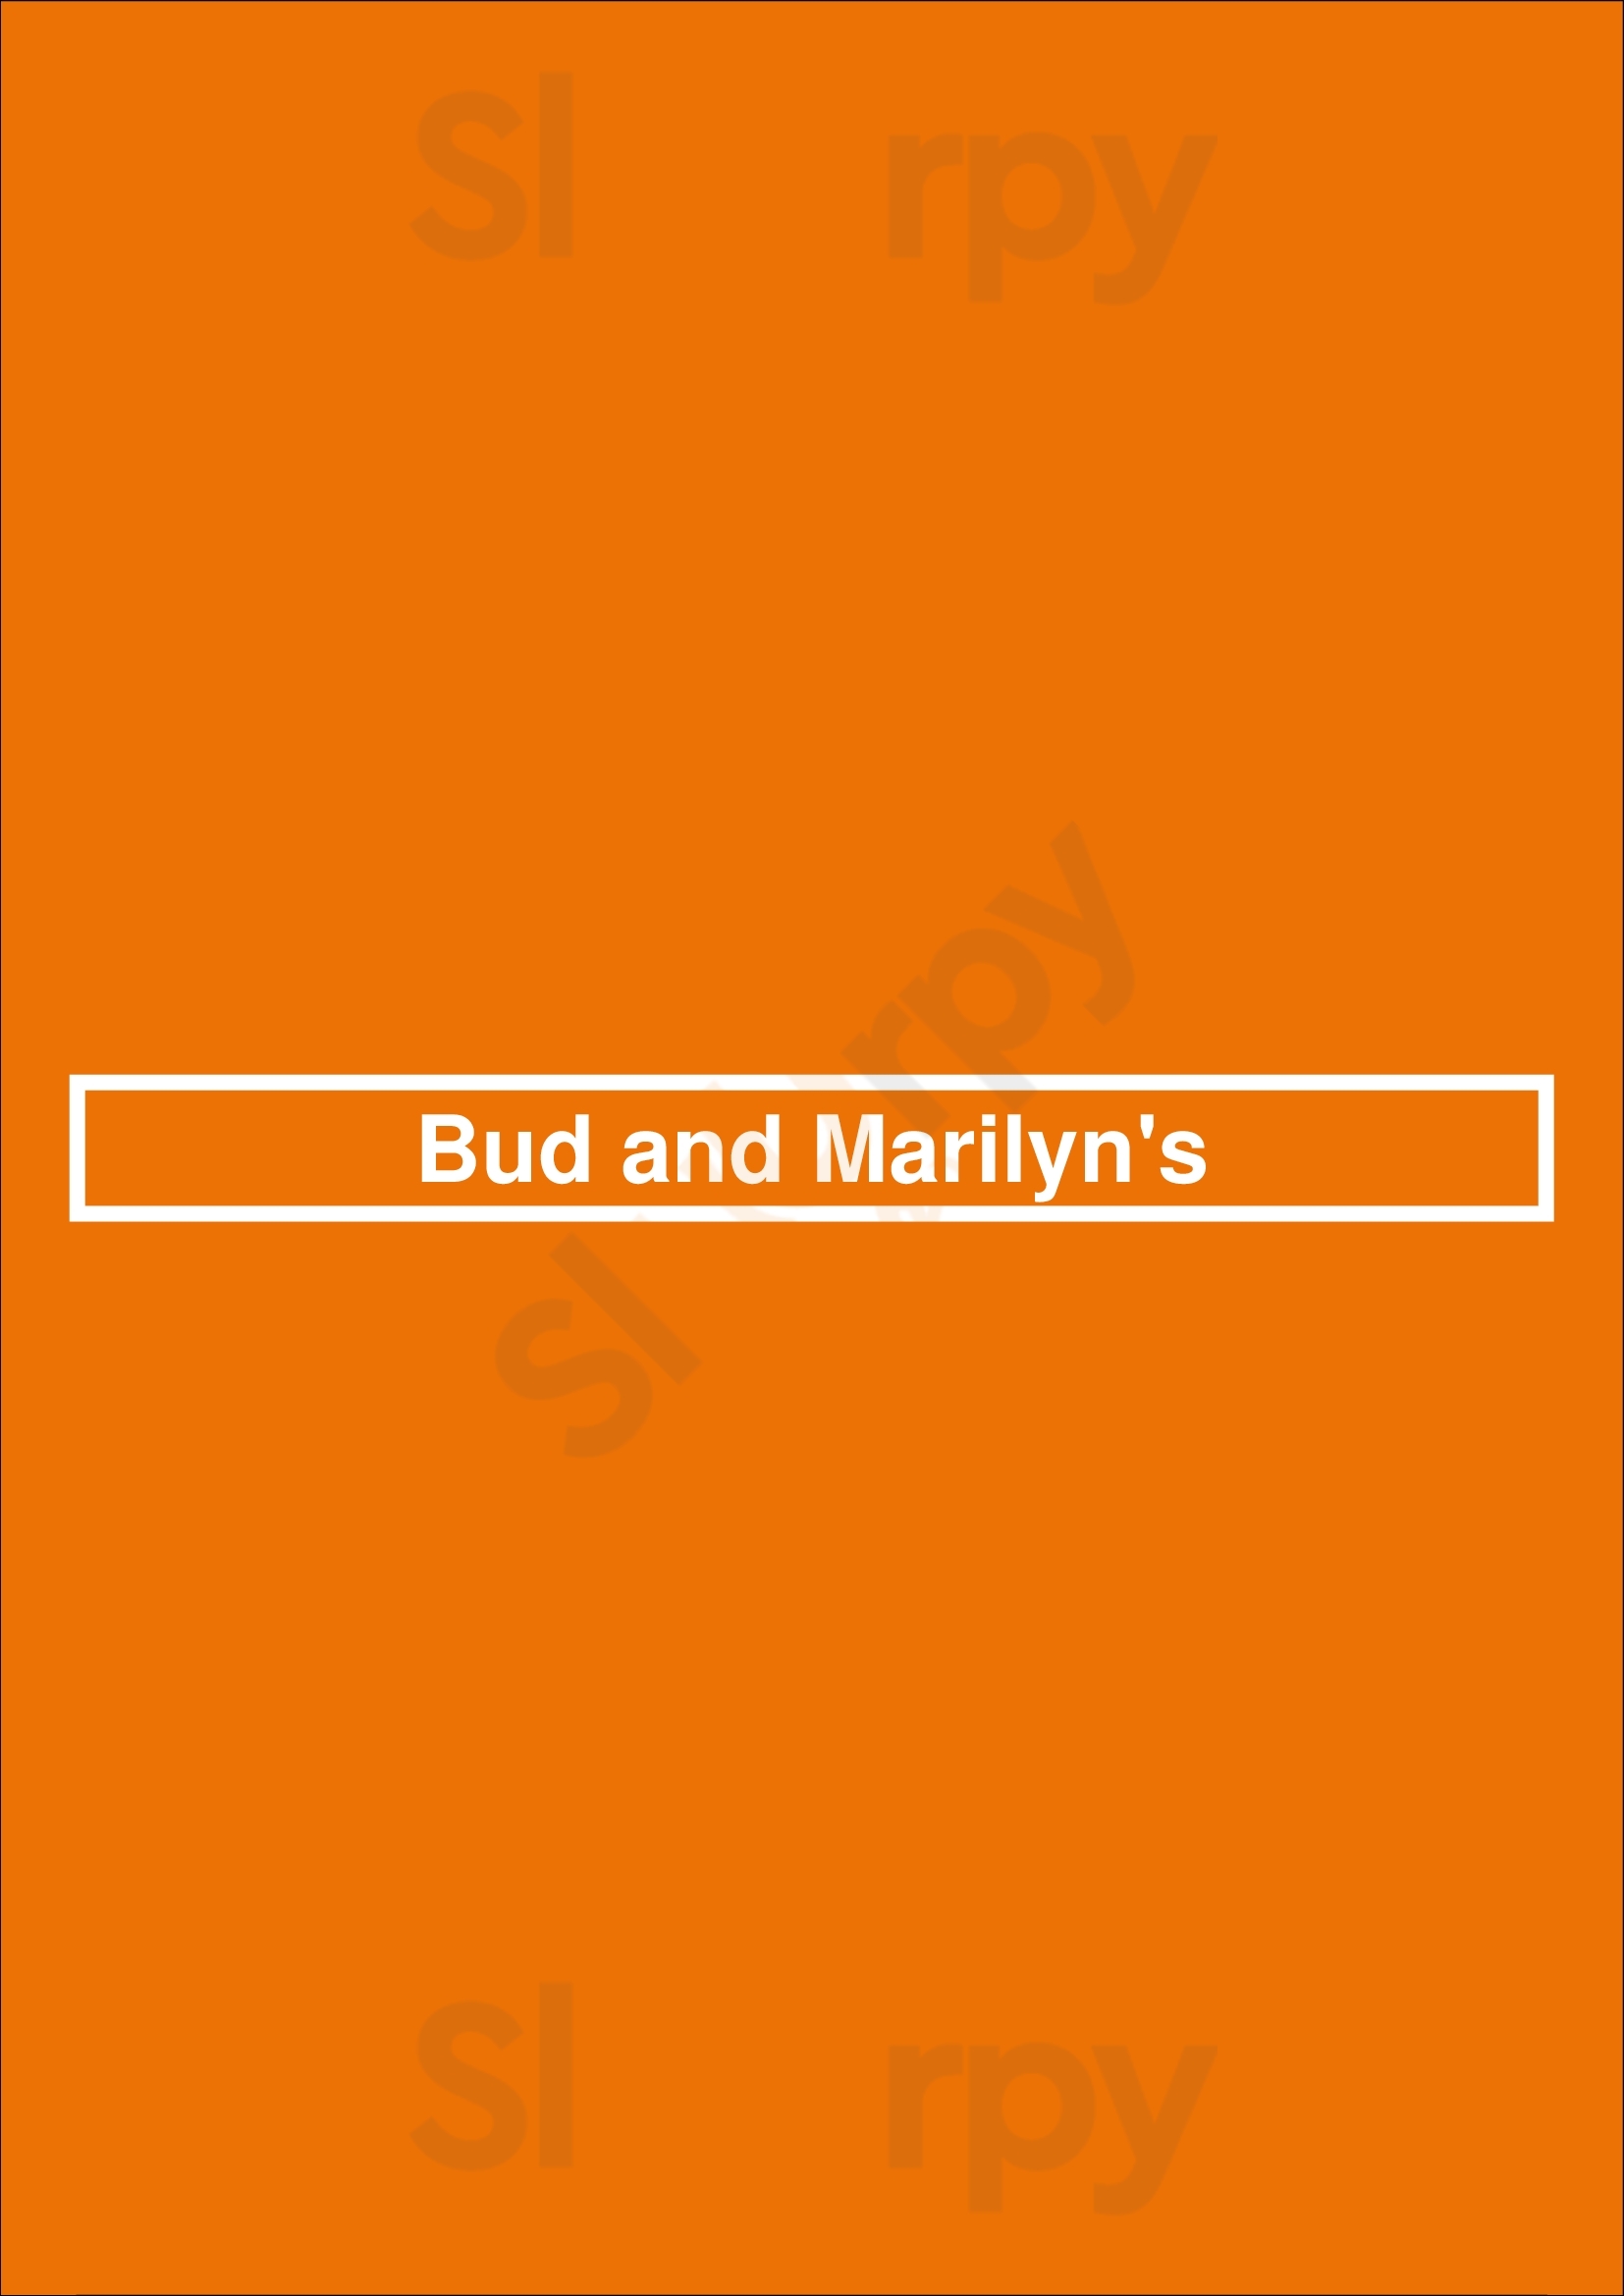 Bud And Marilyn's Philadelphia Menu - 1